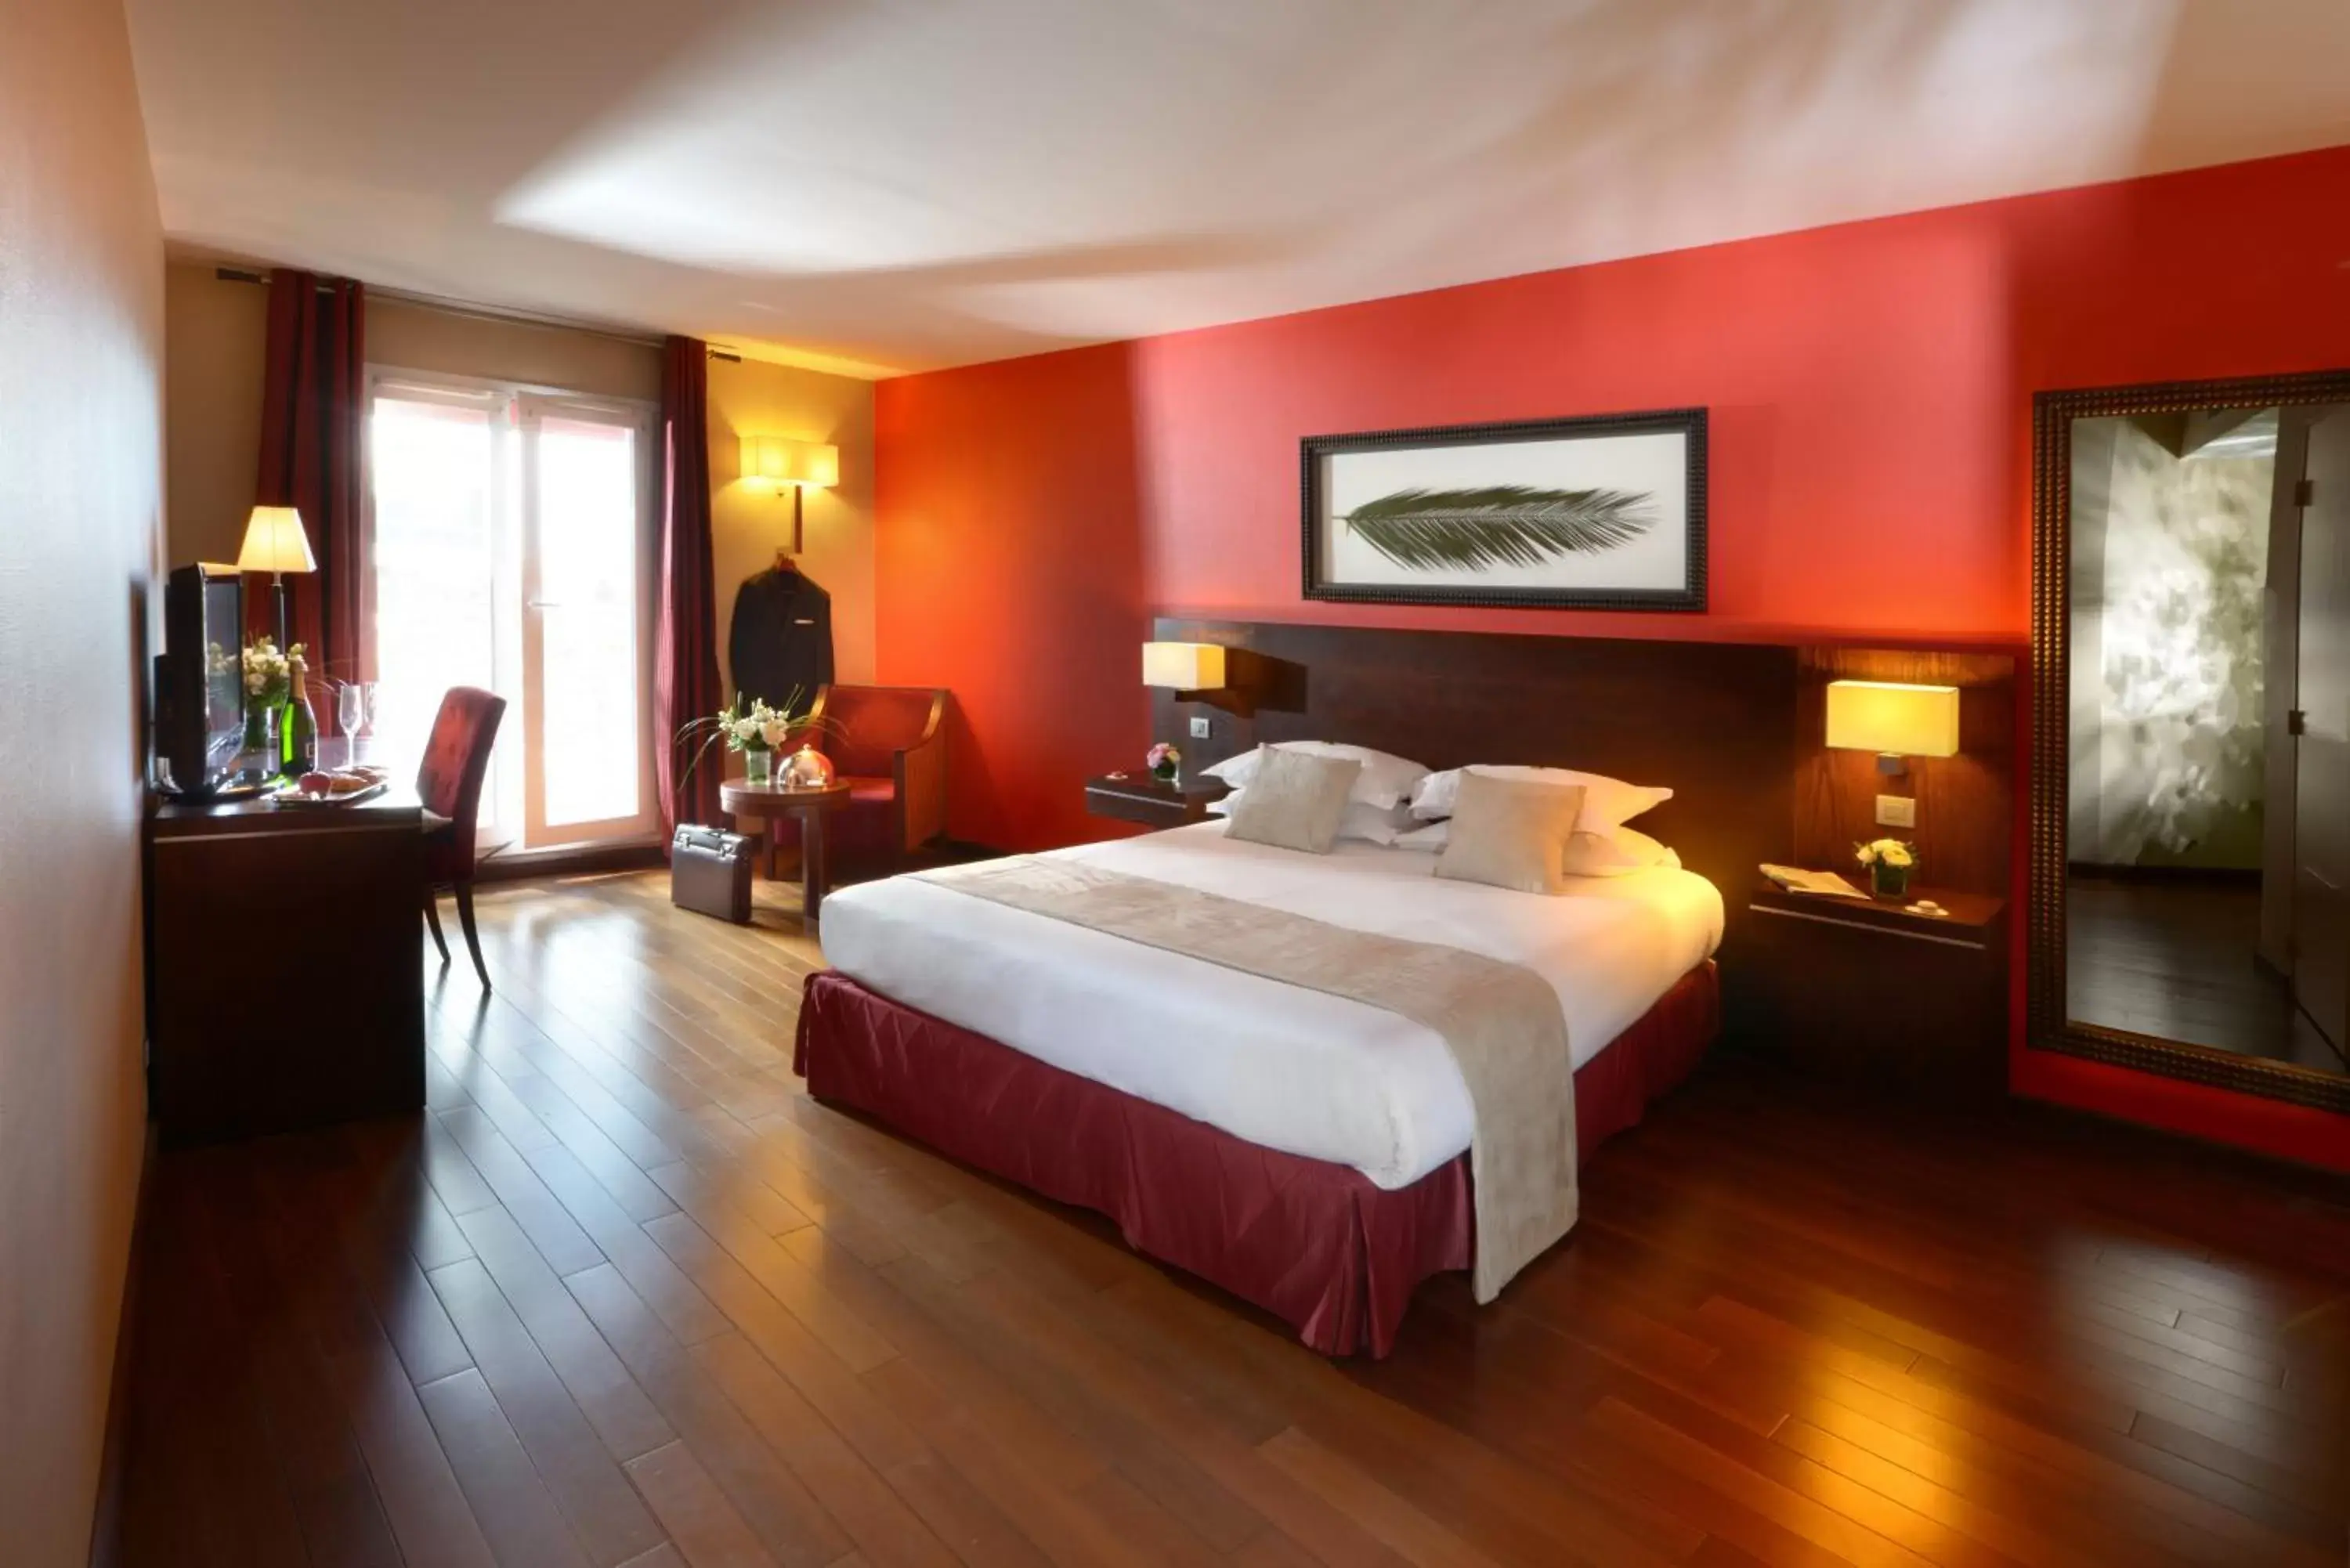 Bedroom in Hotel de Berny